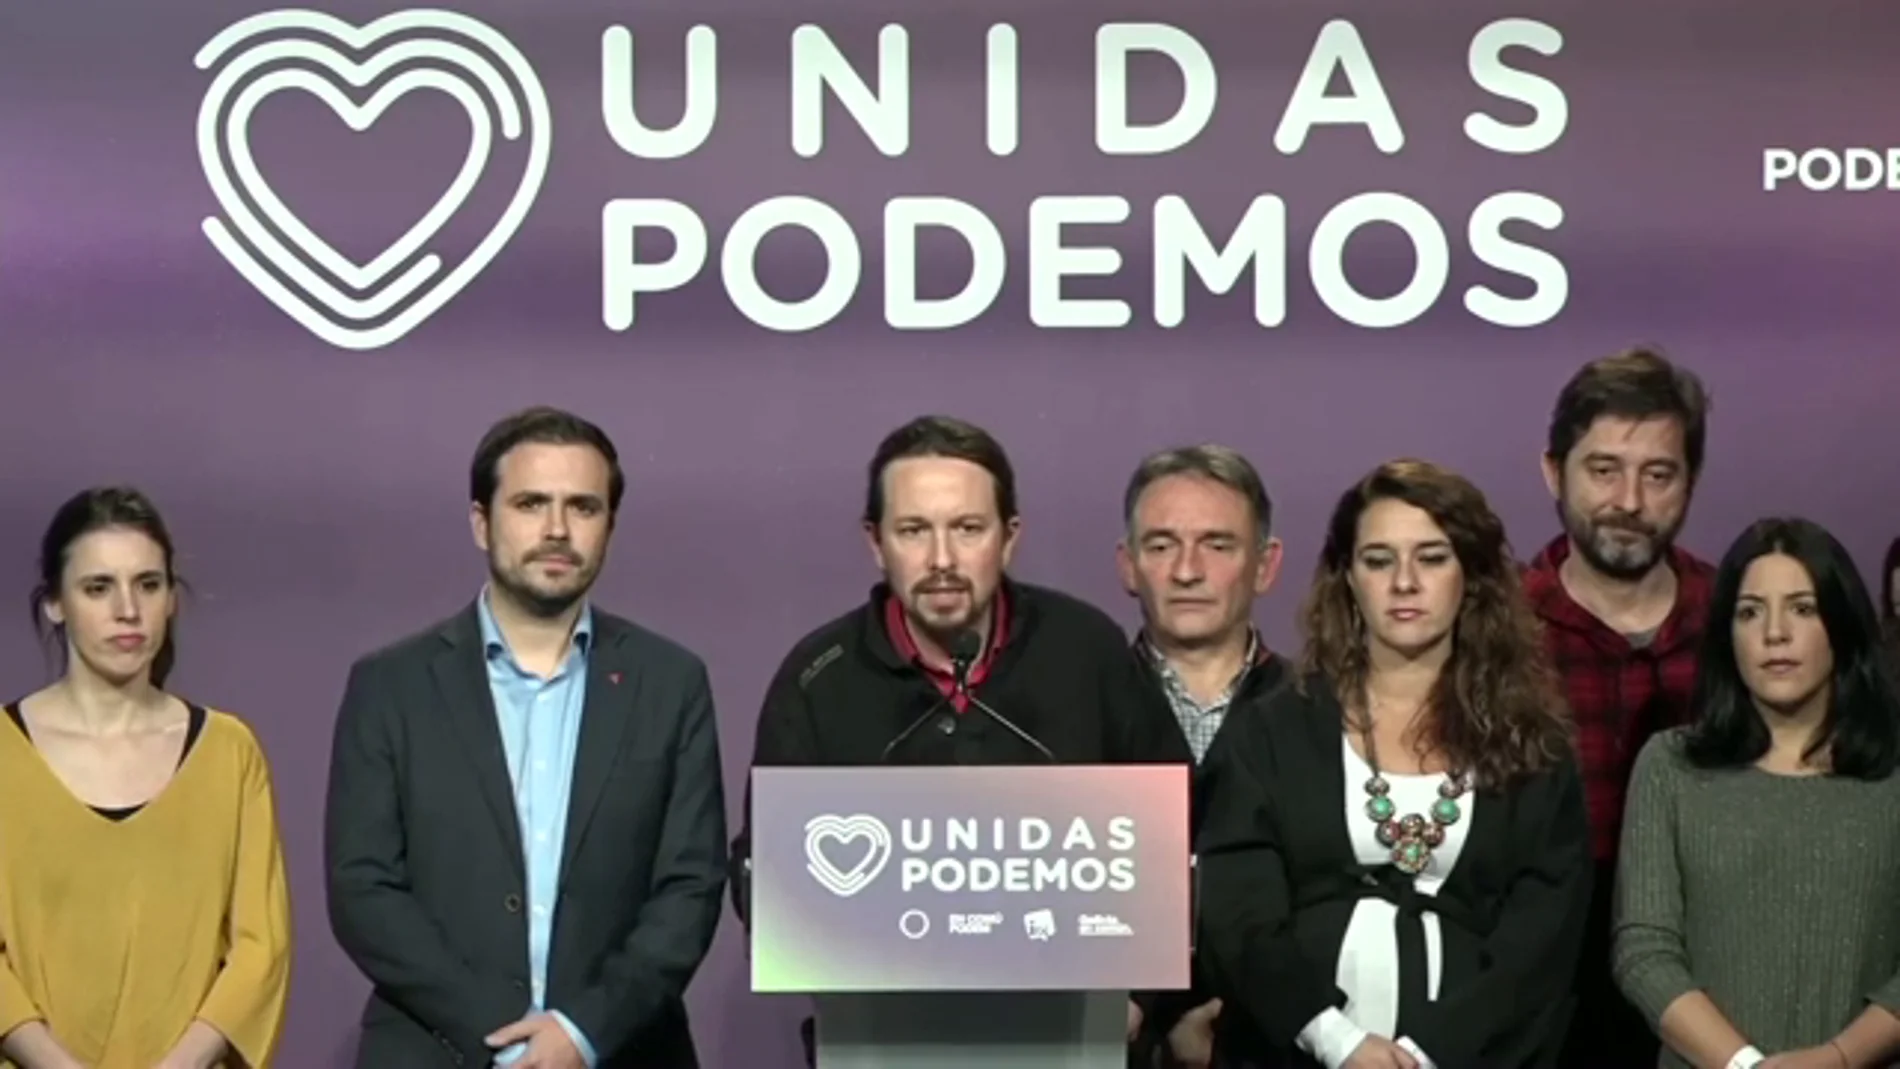 Pablo Iglesias tras el resultado de las elecciones generales, vídeo en directo